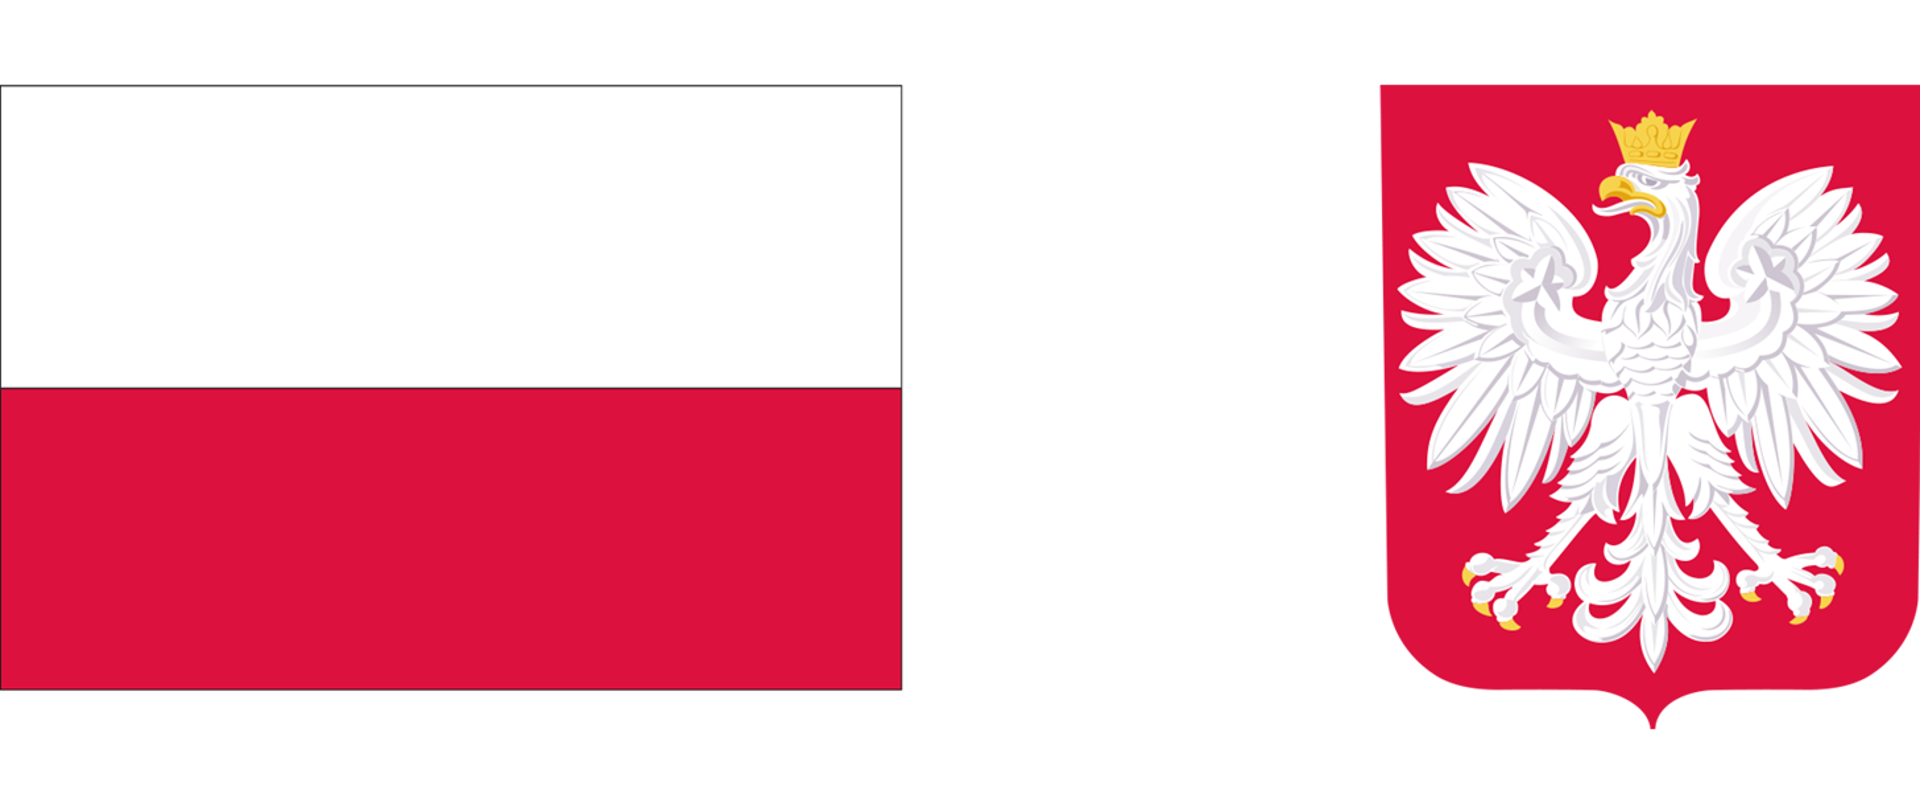 Obrazek przedstawia flagę oraz godło Polski